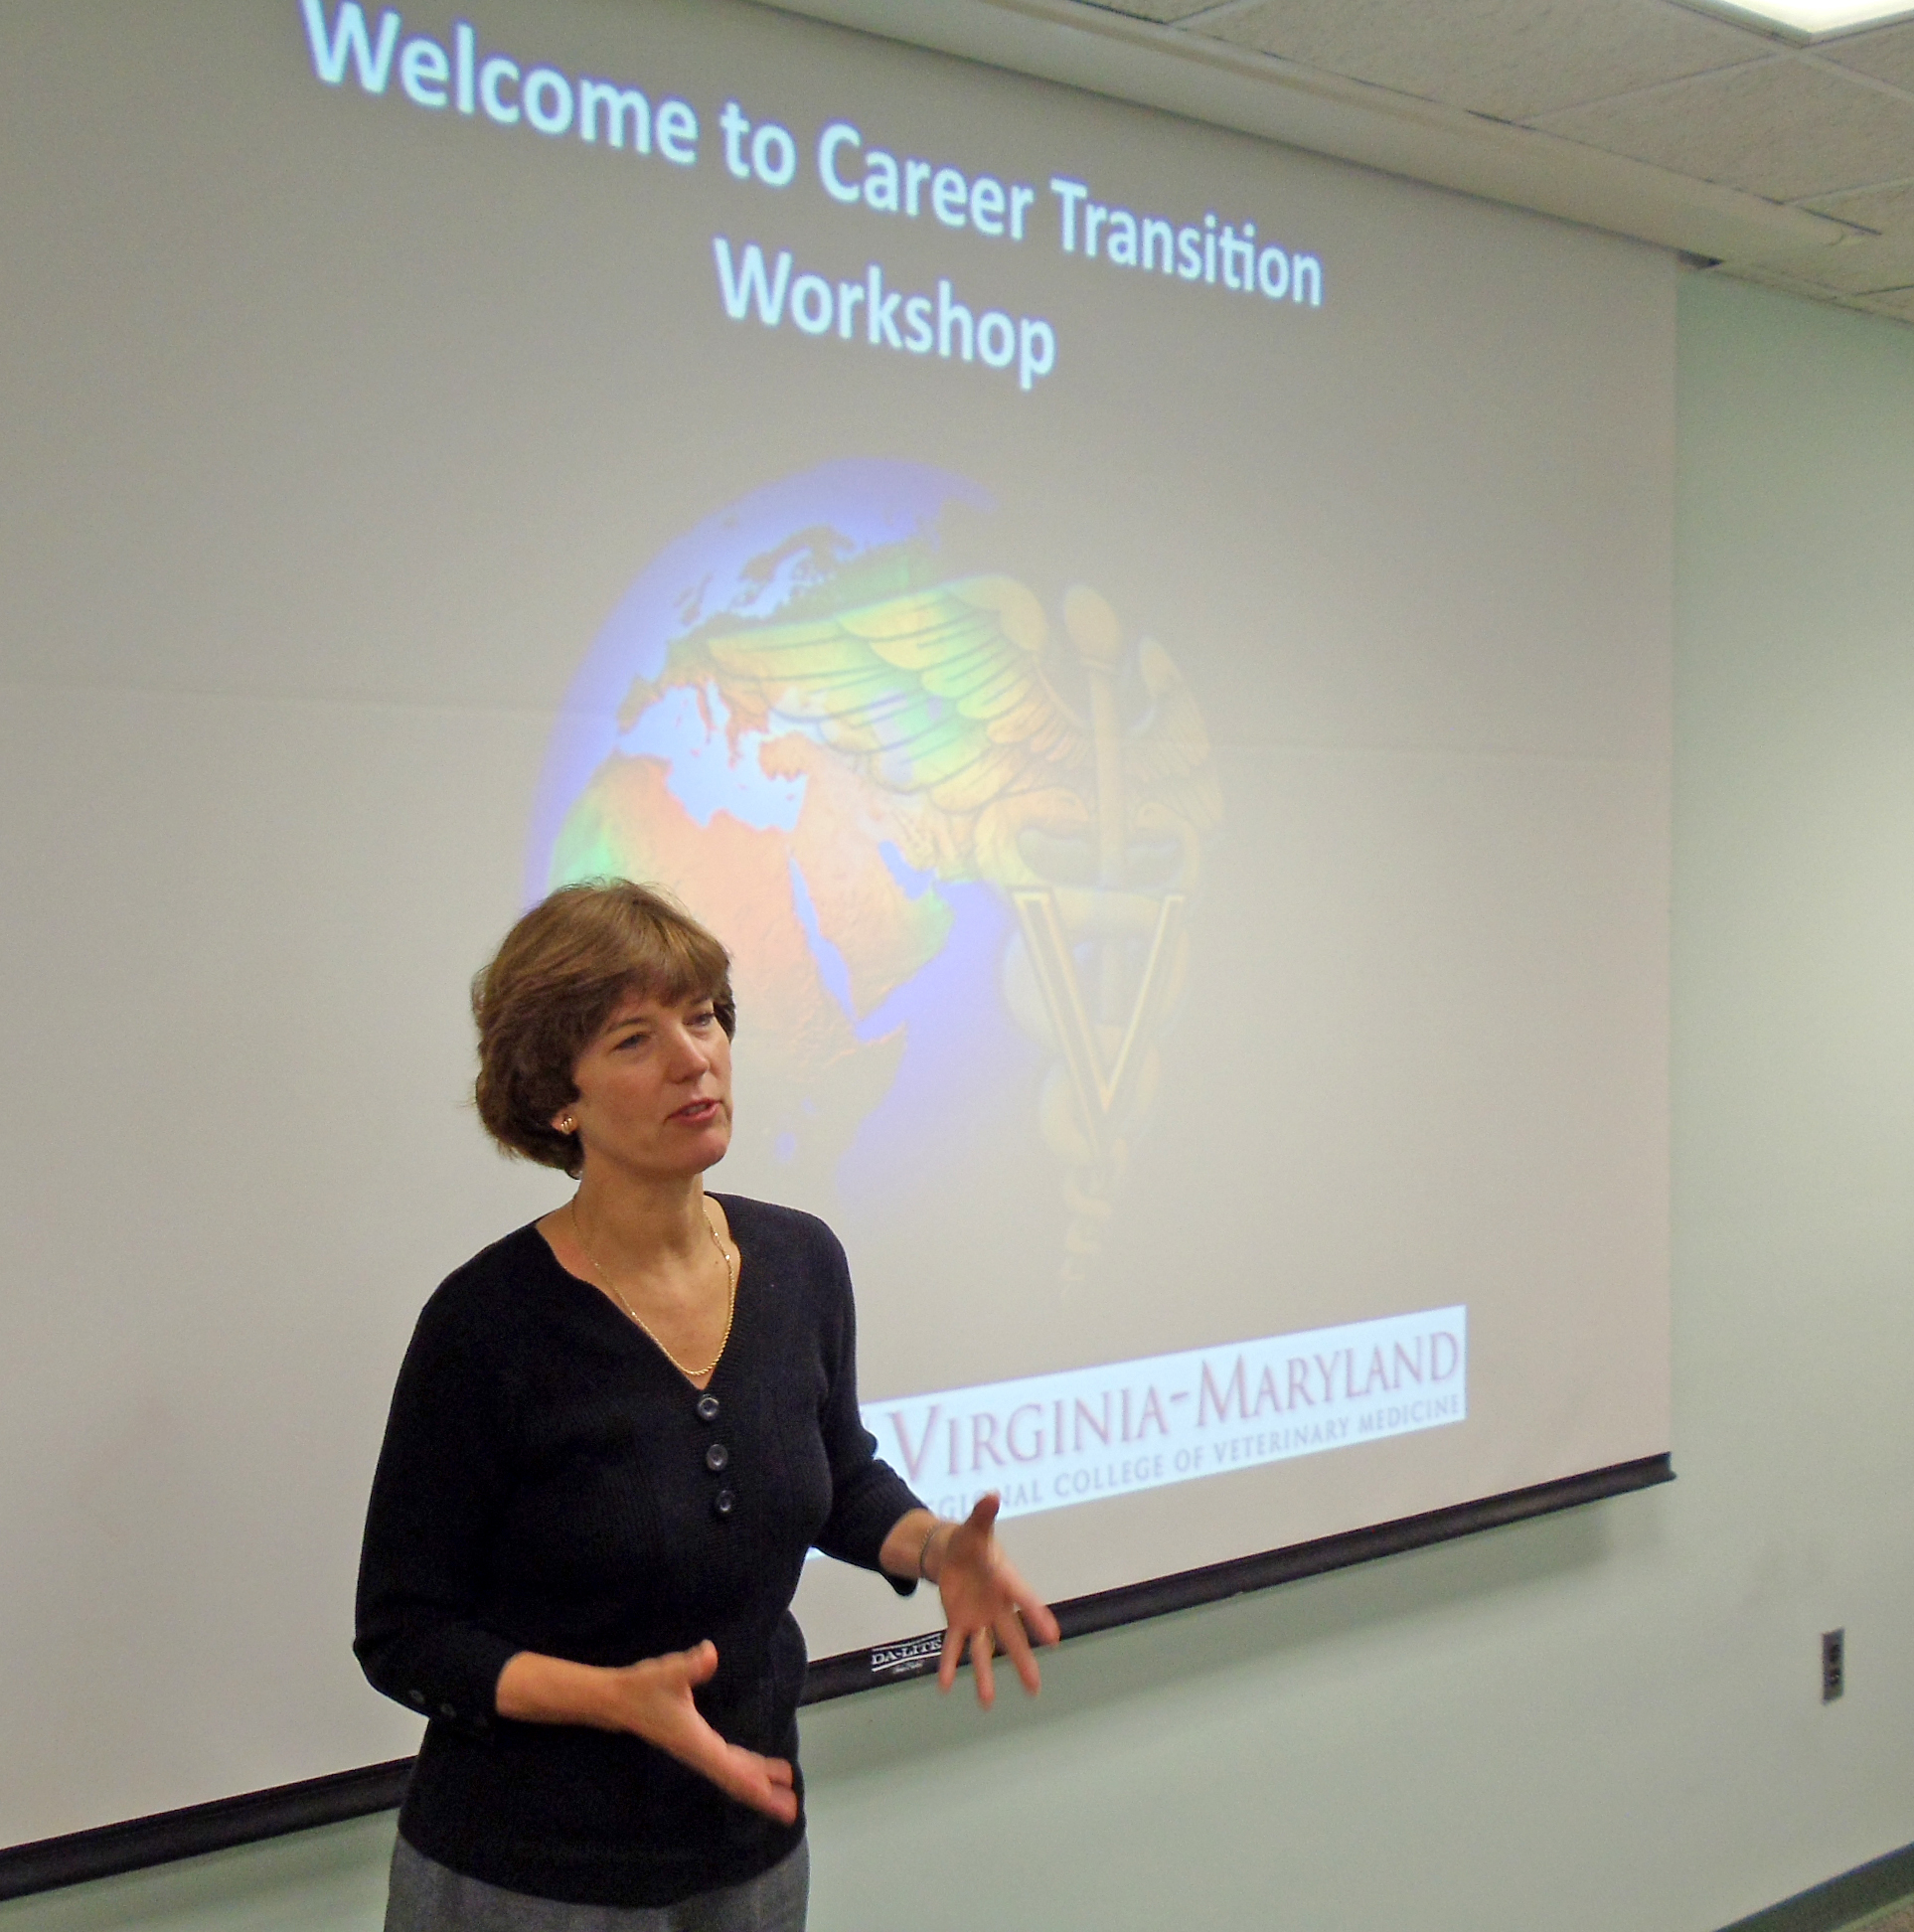 A presenter kicks off the career transition workshop